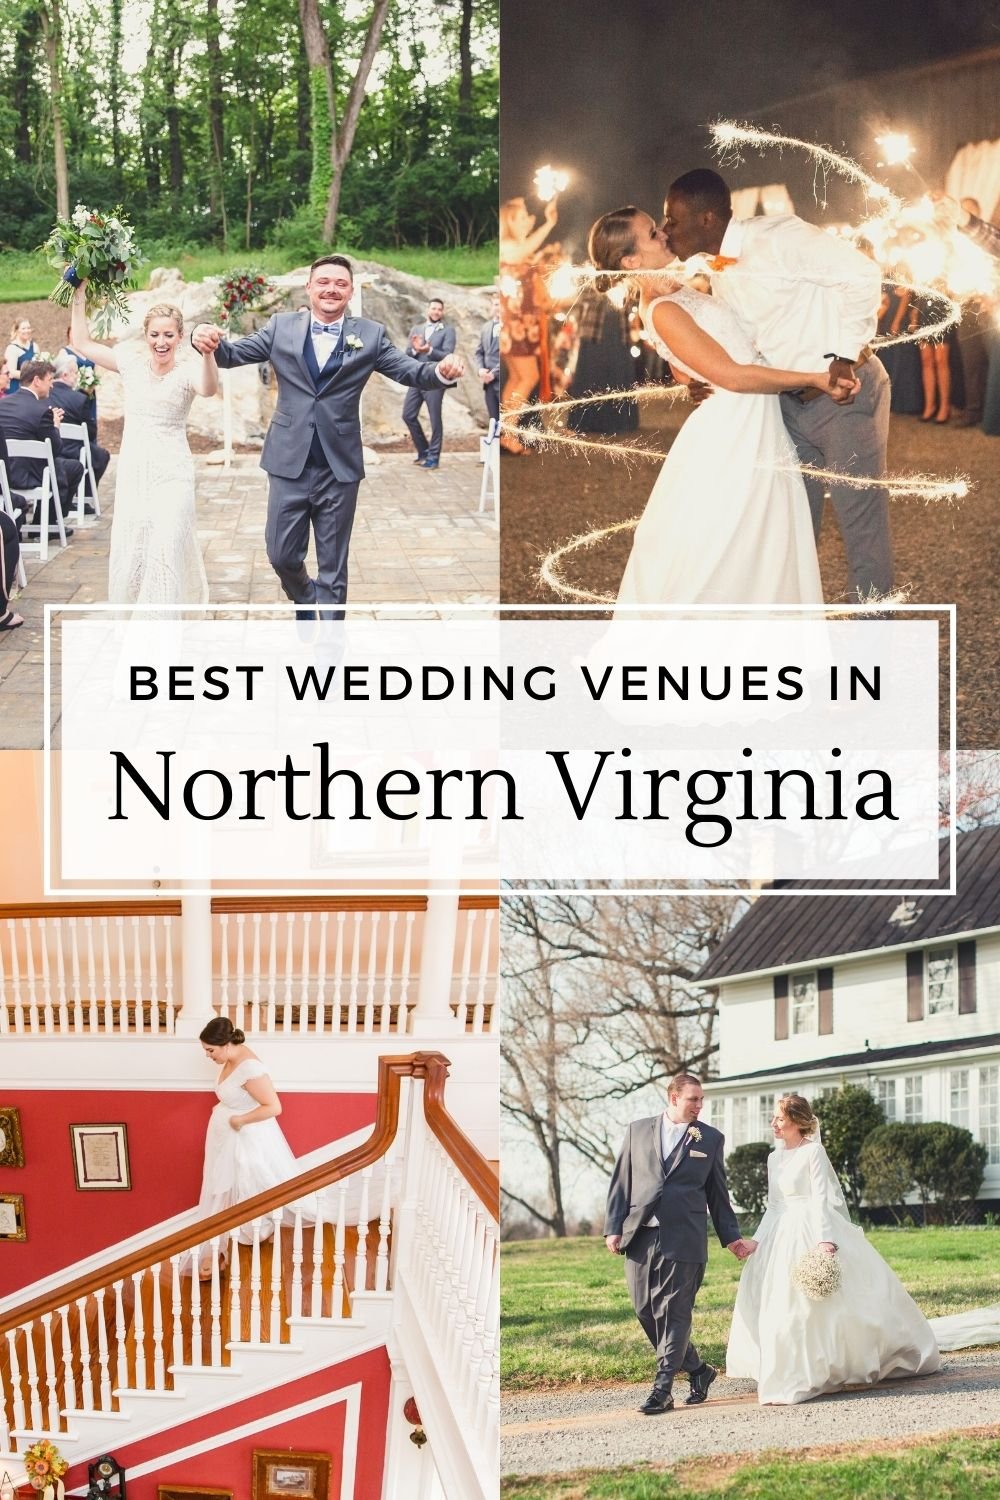 Northern Virginia wedding venues